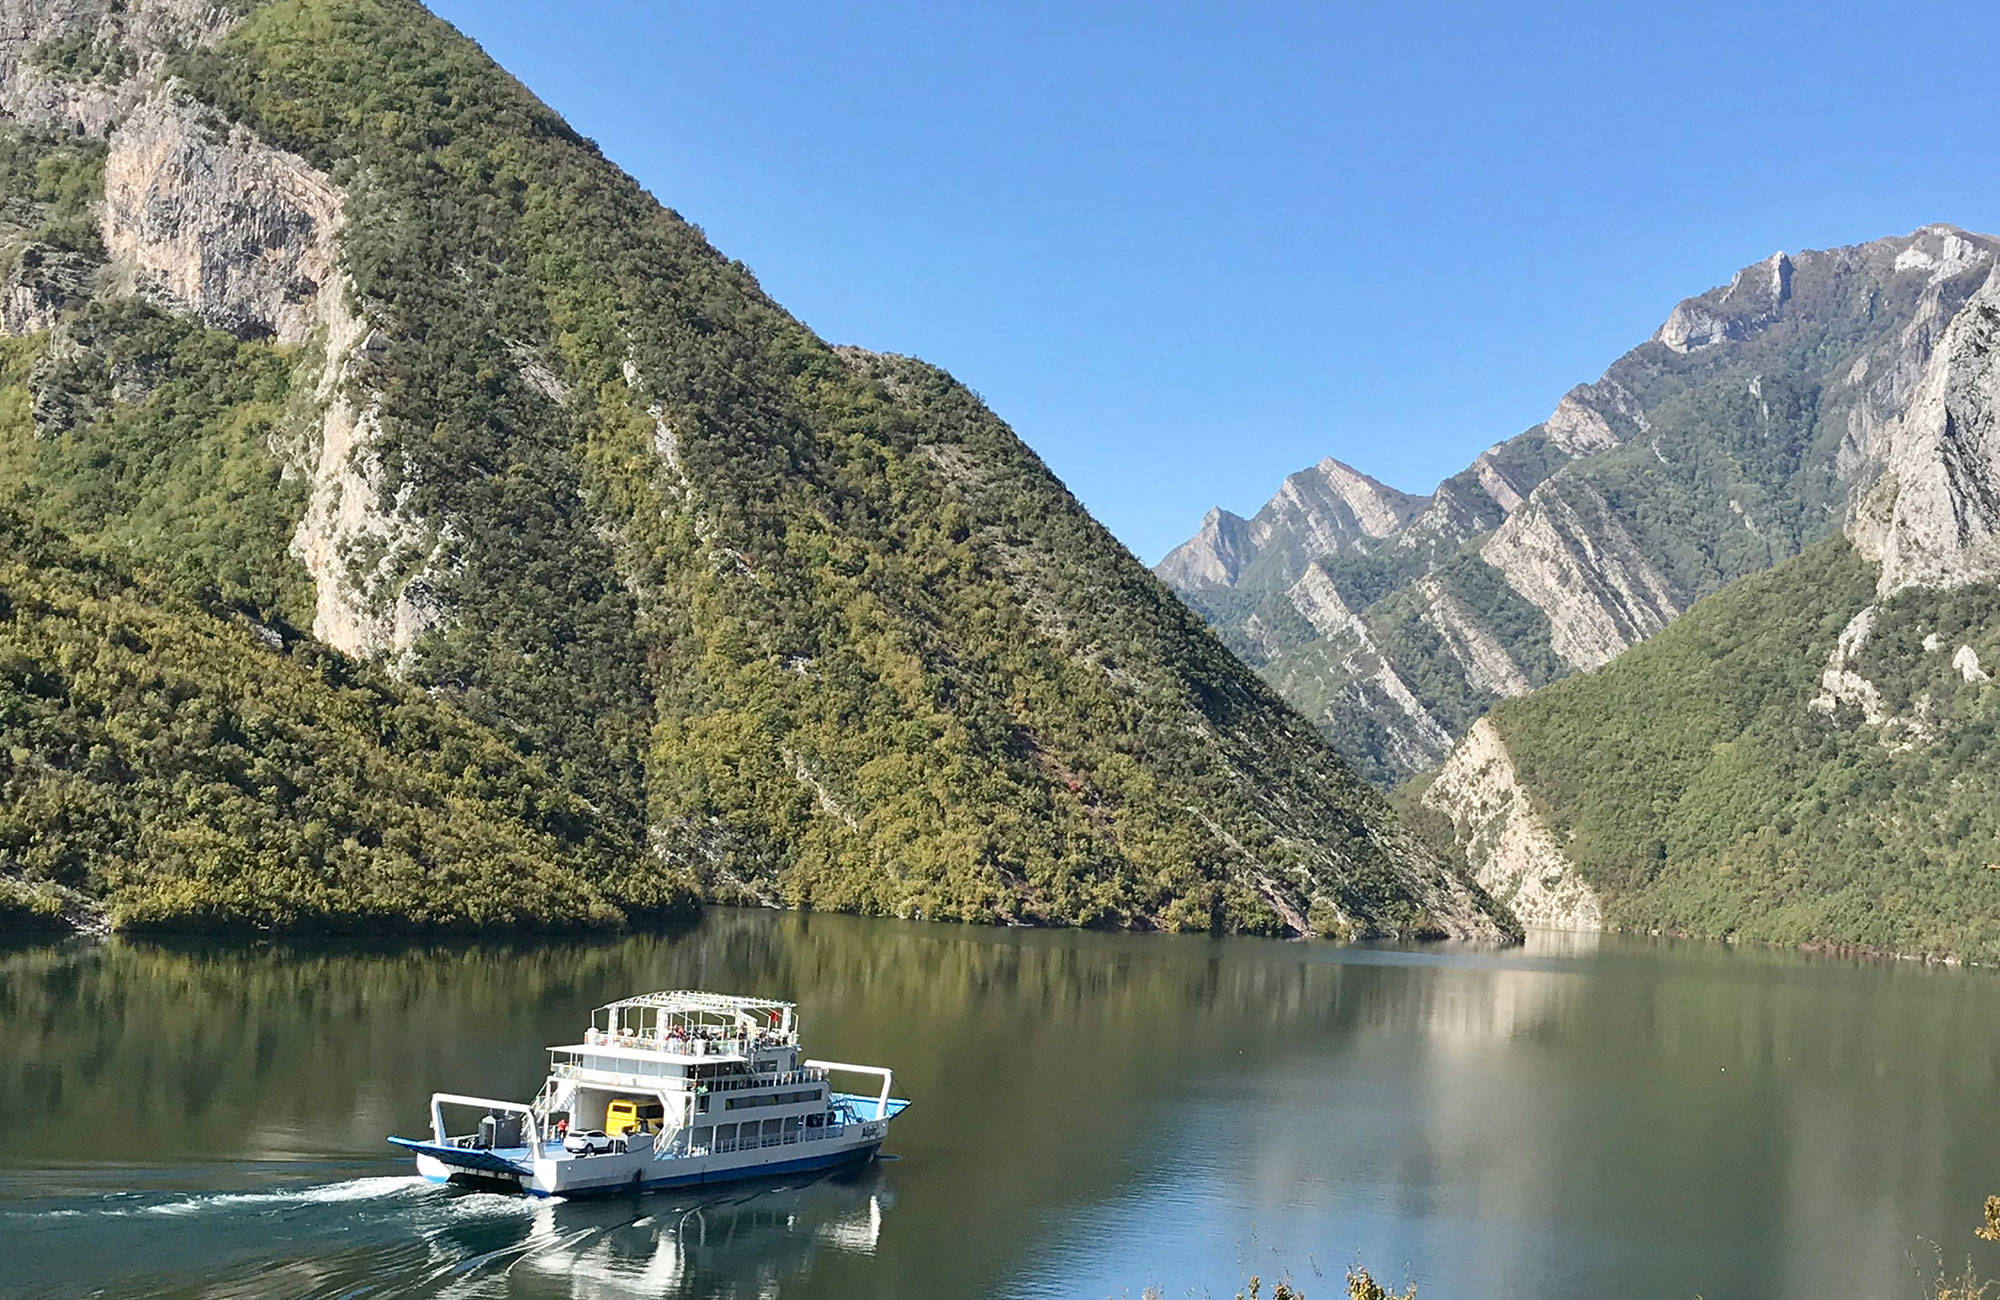 Tjek nogle af de mange smukke søer i albanien ud